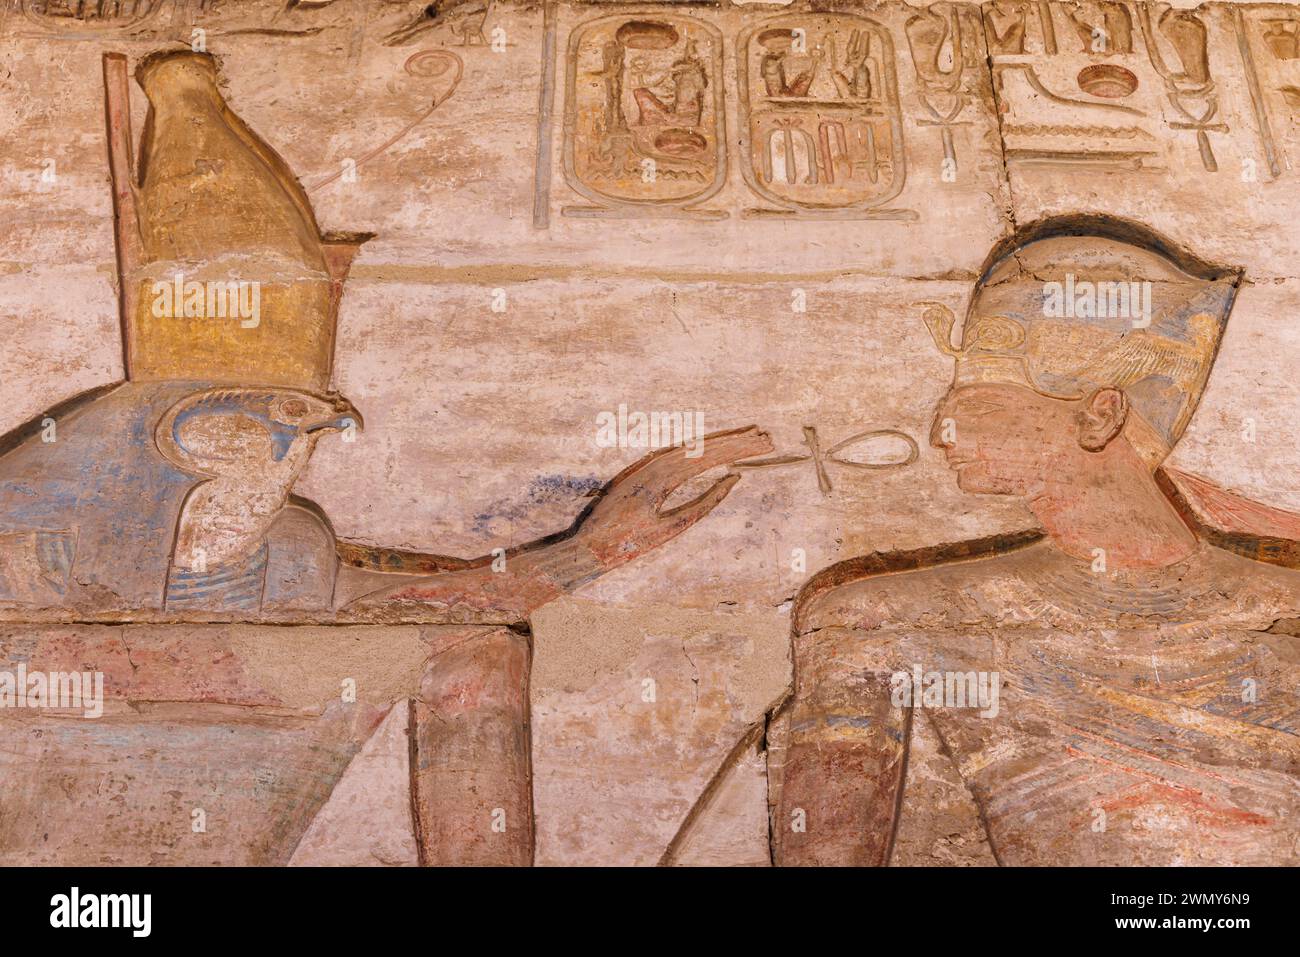 Egitto, Sohag, Abydos, città di pellegrinaggio dei faraoni dichiarata Patrimonio dell'Umanità dall'UNESCO, tempio di Seti i, bassorilievo sulle pareti esterne Foto Stock